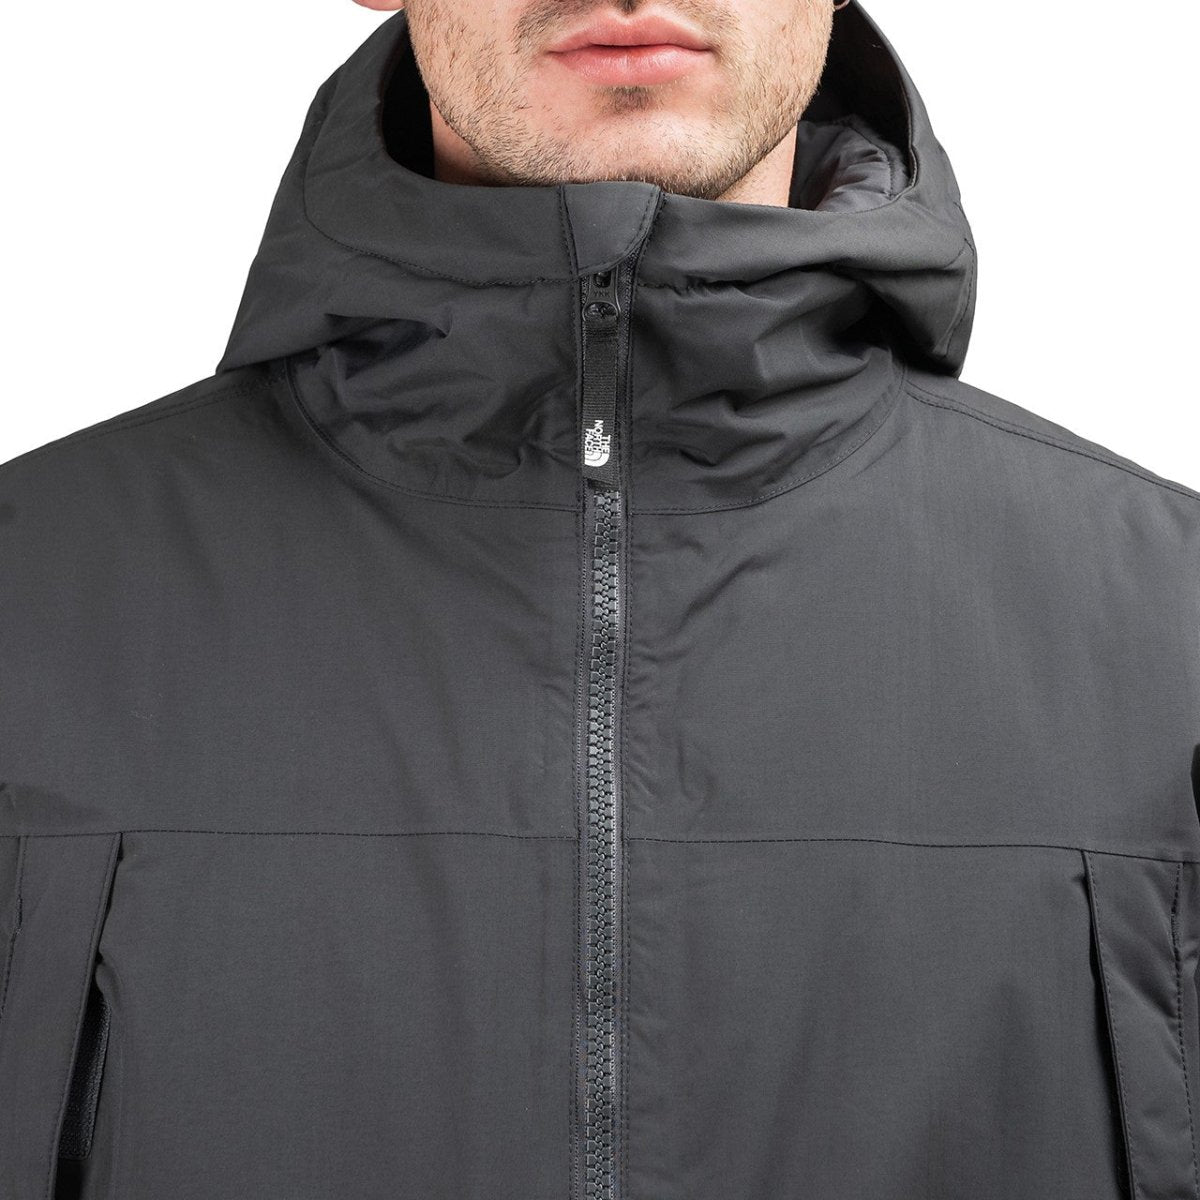 The North Face Storm Peak Jacket (Antharazit)  - Allike Store